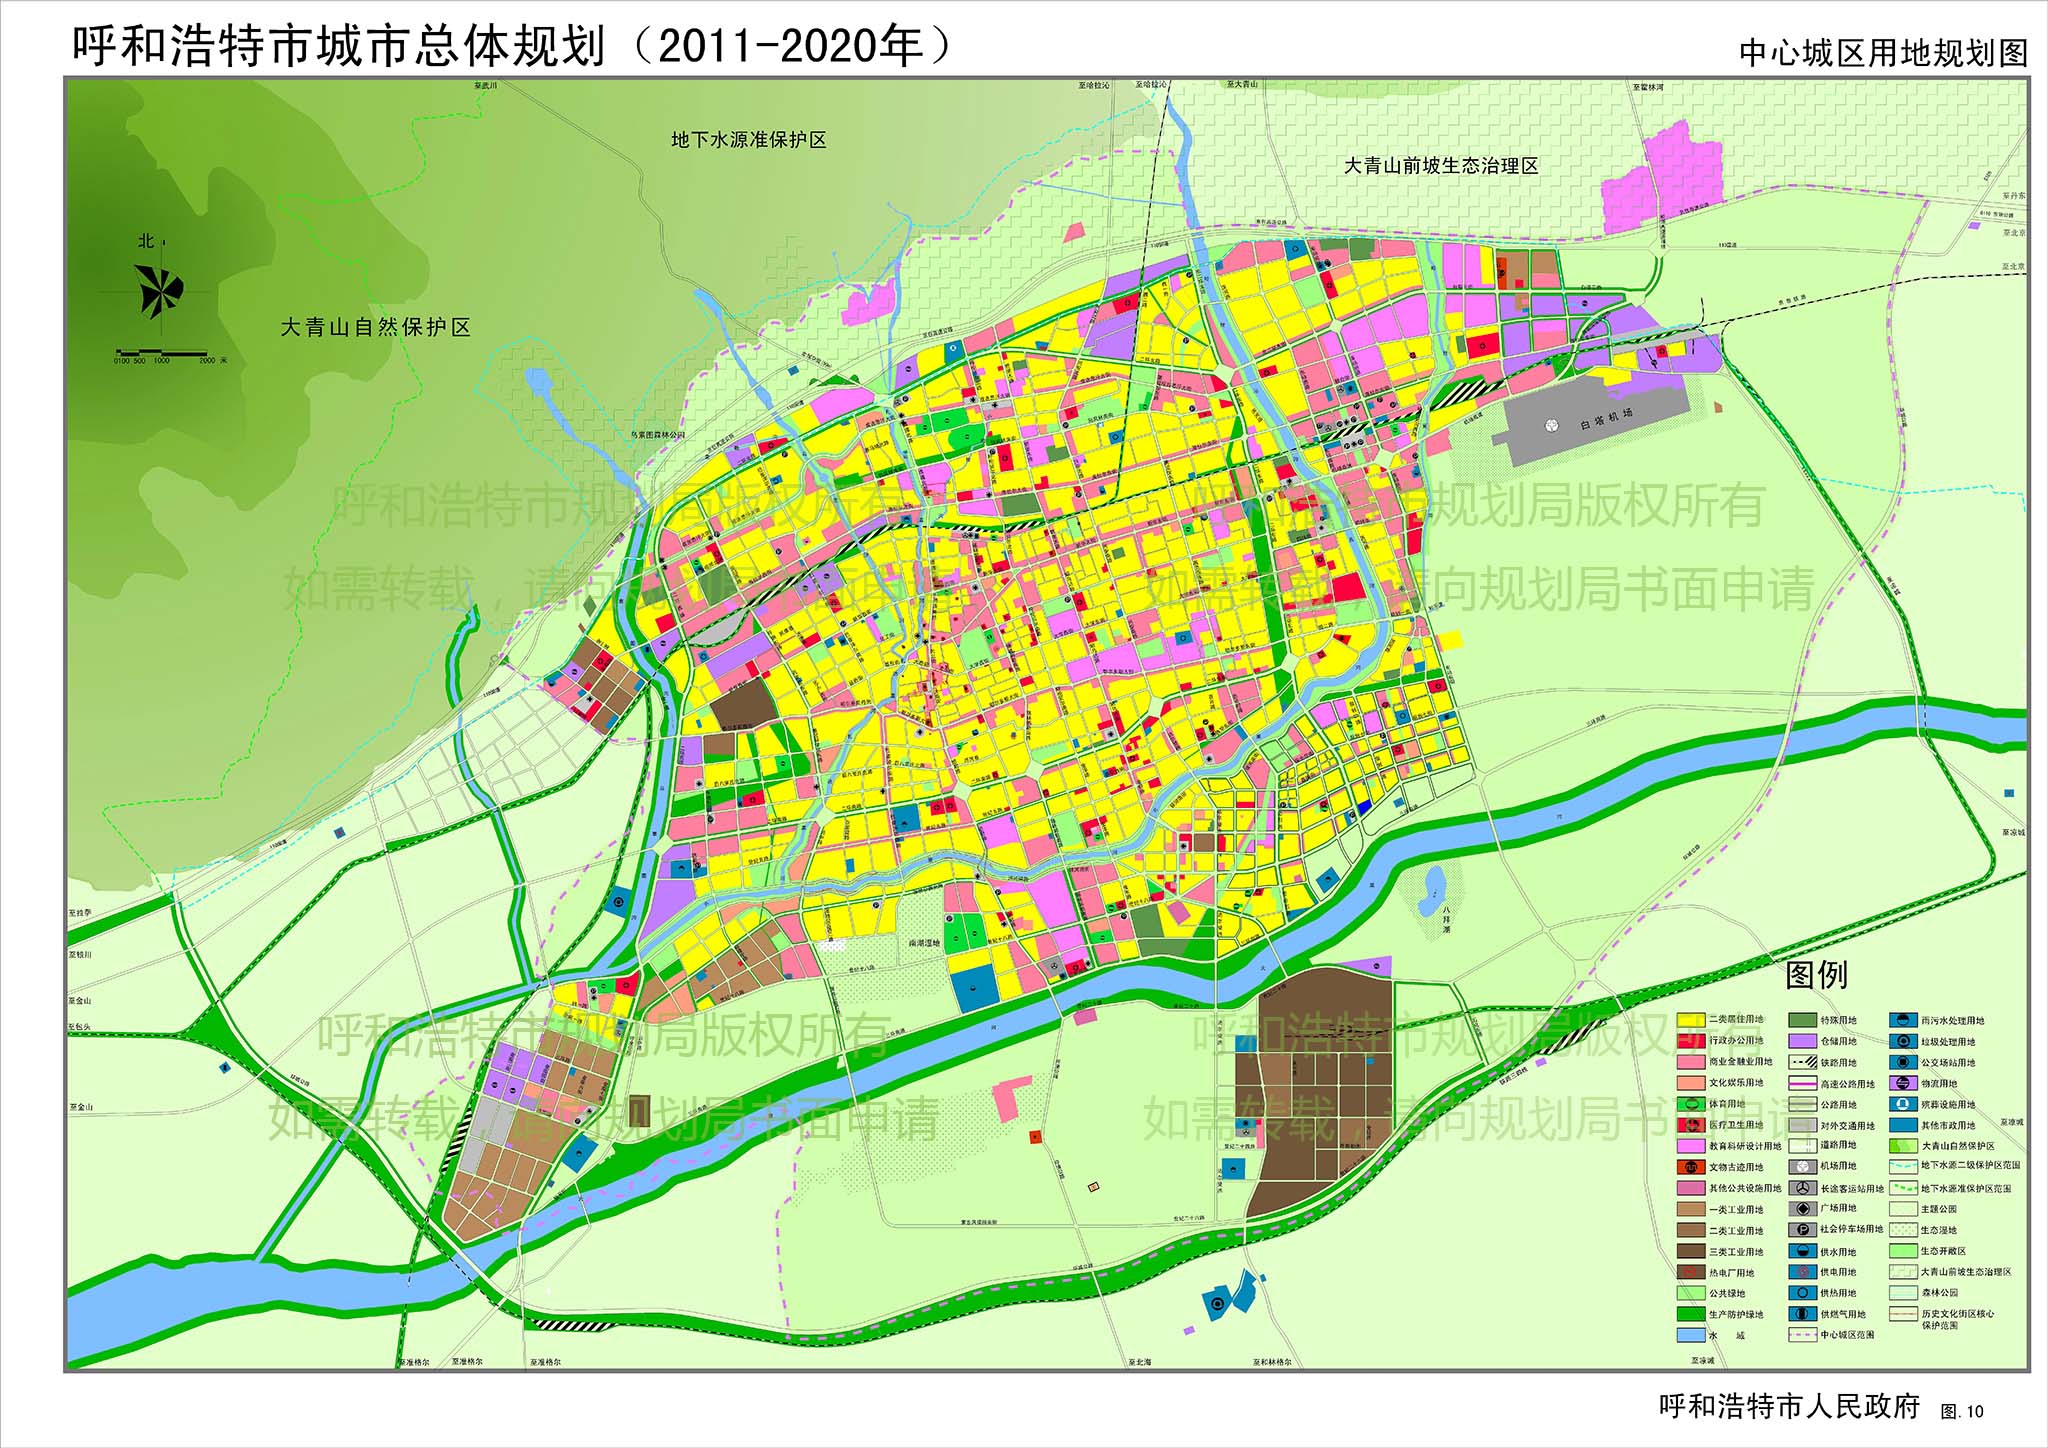 呼和浩特市总体规划(2011-2020)图片